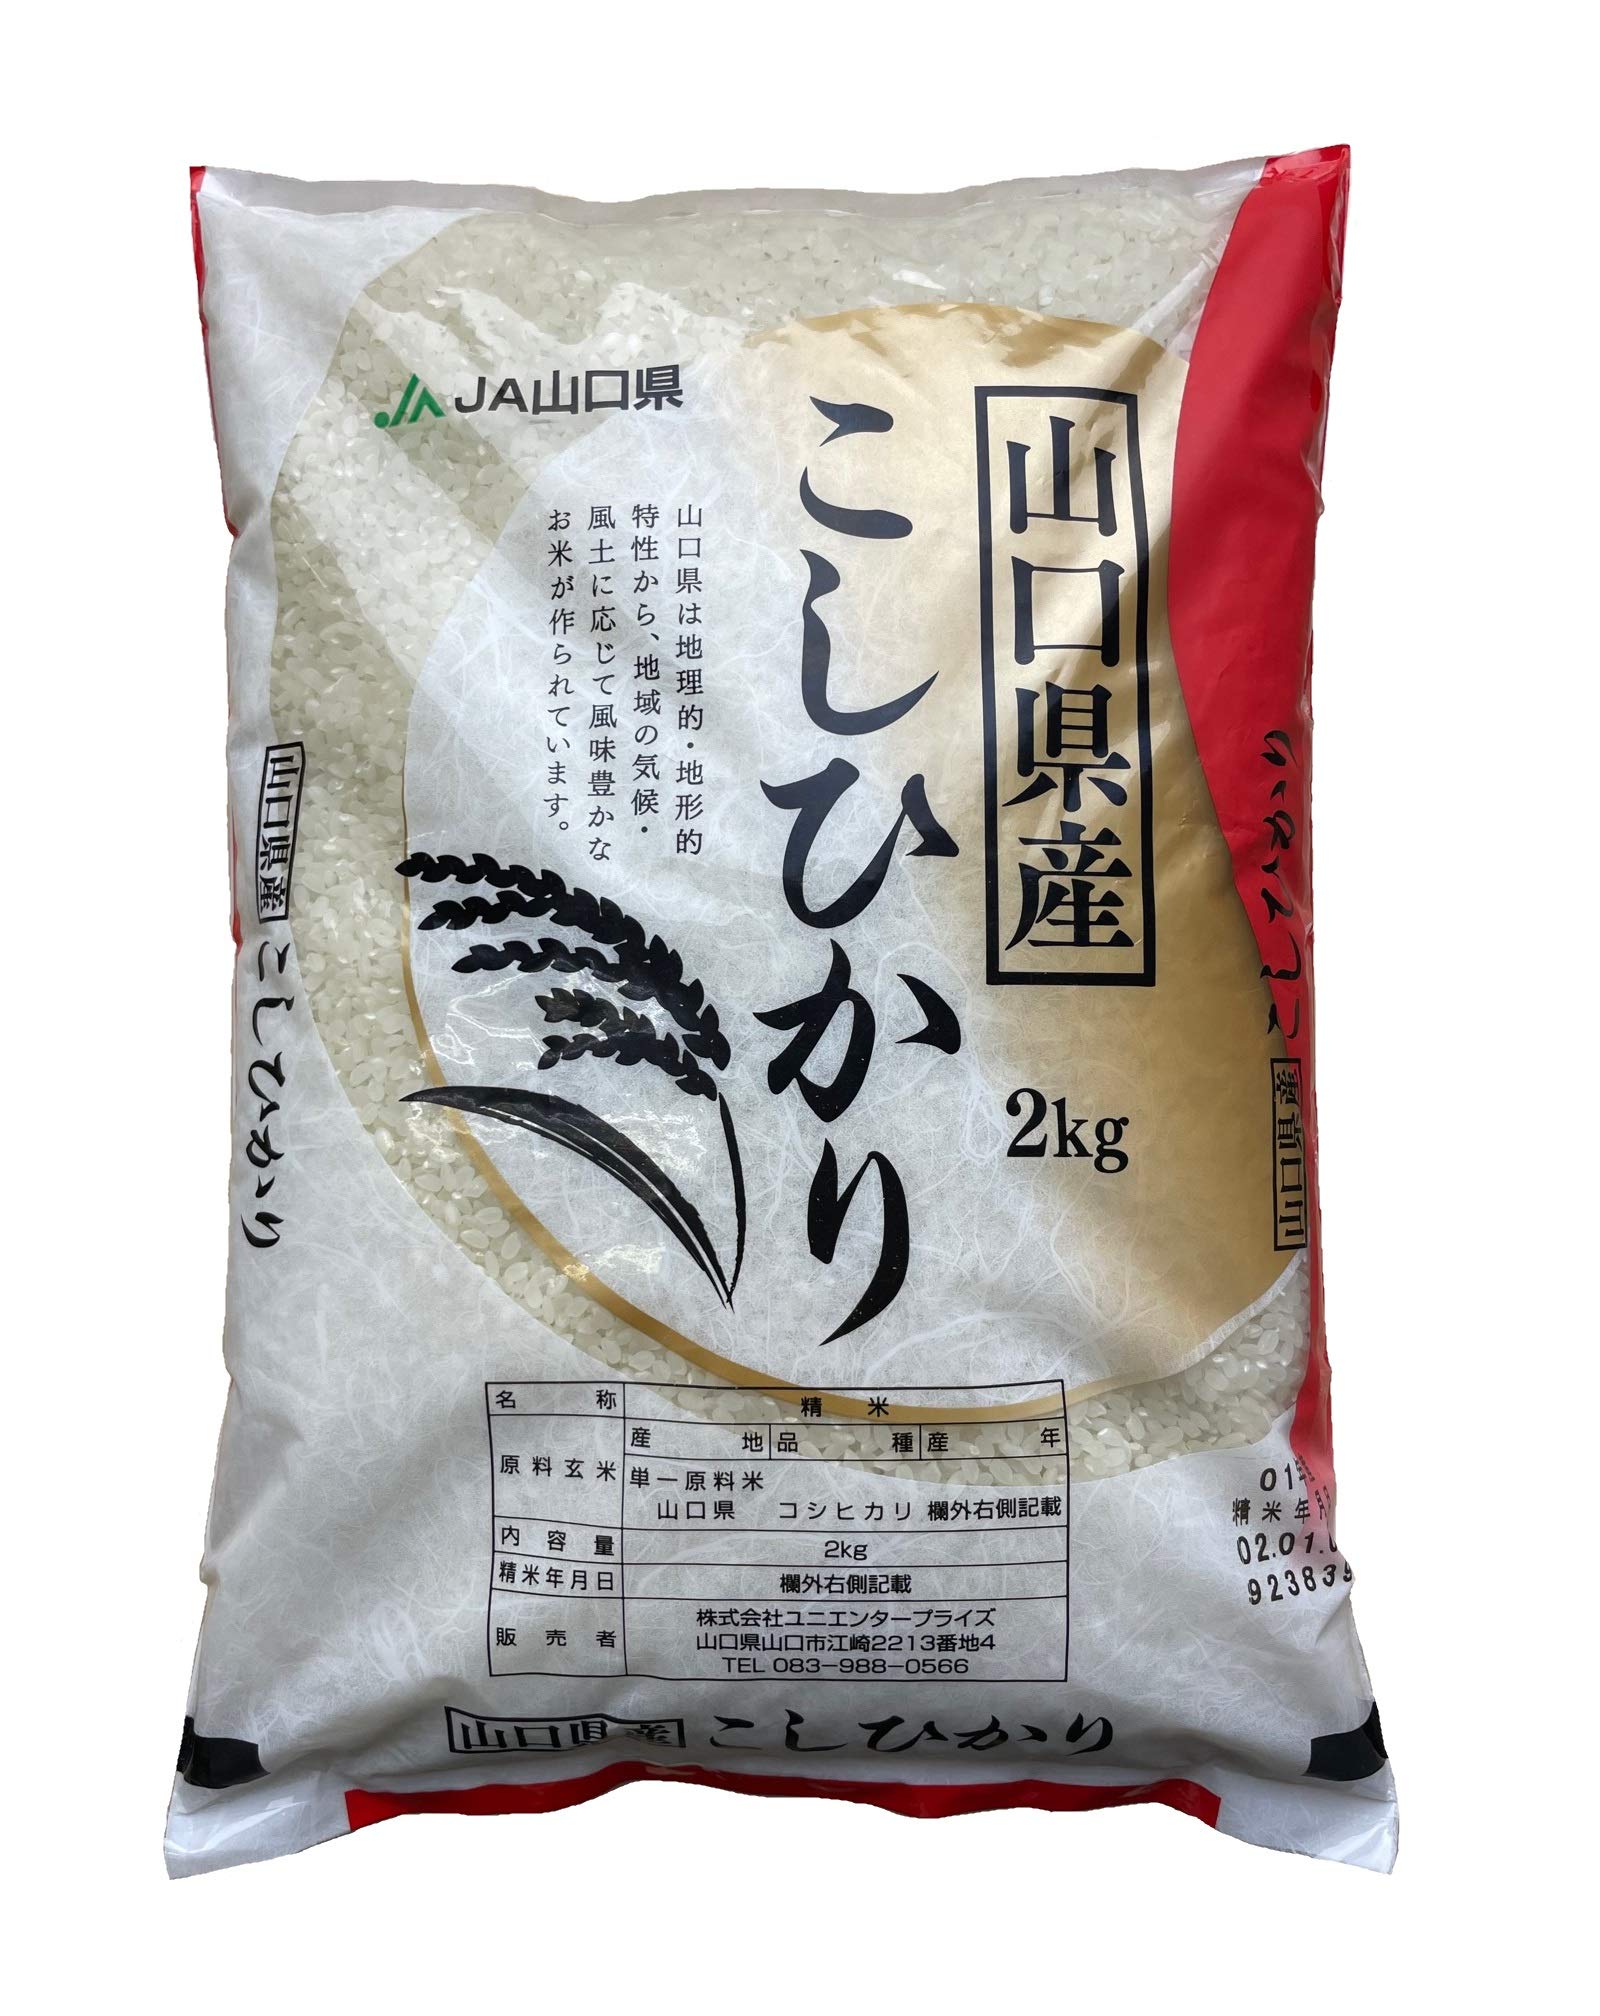 Koshihikari Premium White Rice from Yamaguchi, JAPAN 4.4 lb (2kg) (1 Bag) - Milled in July 2021